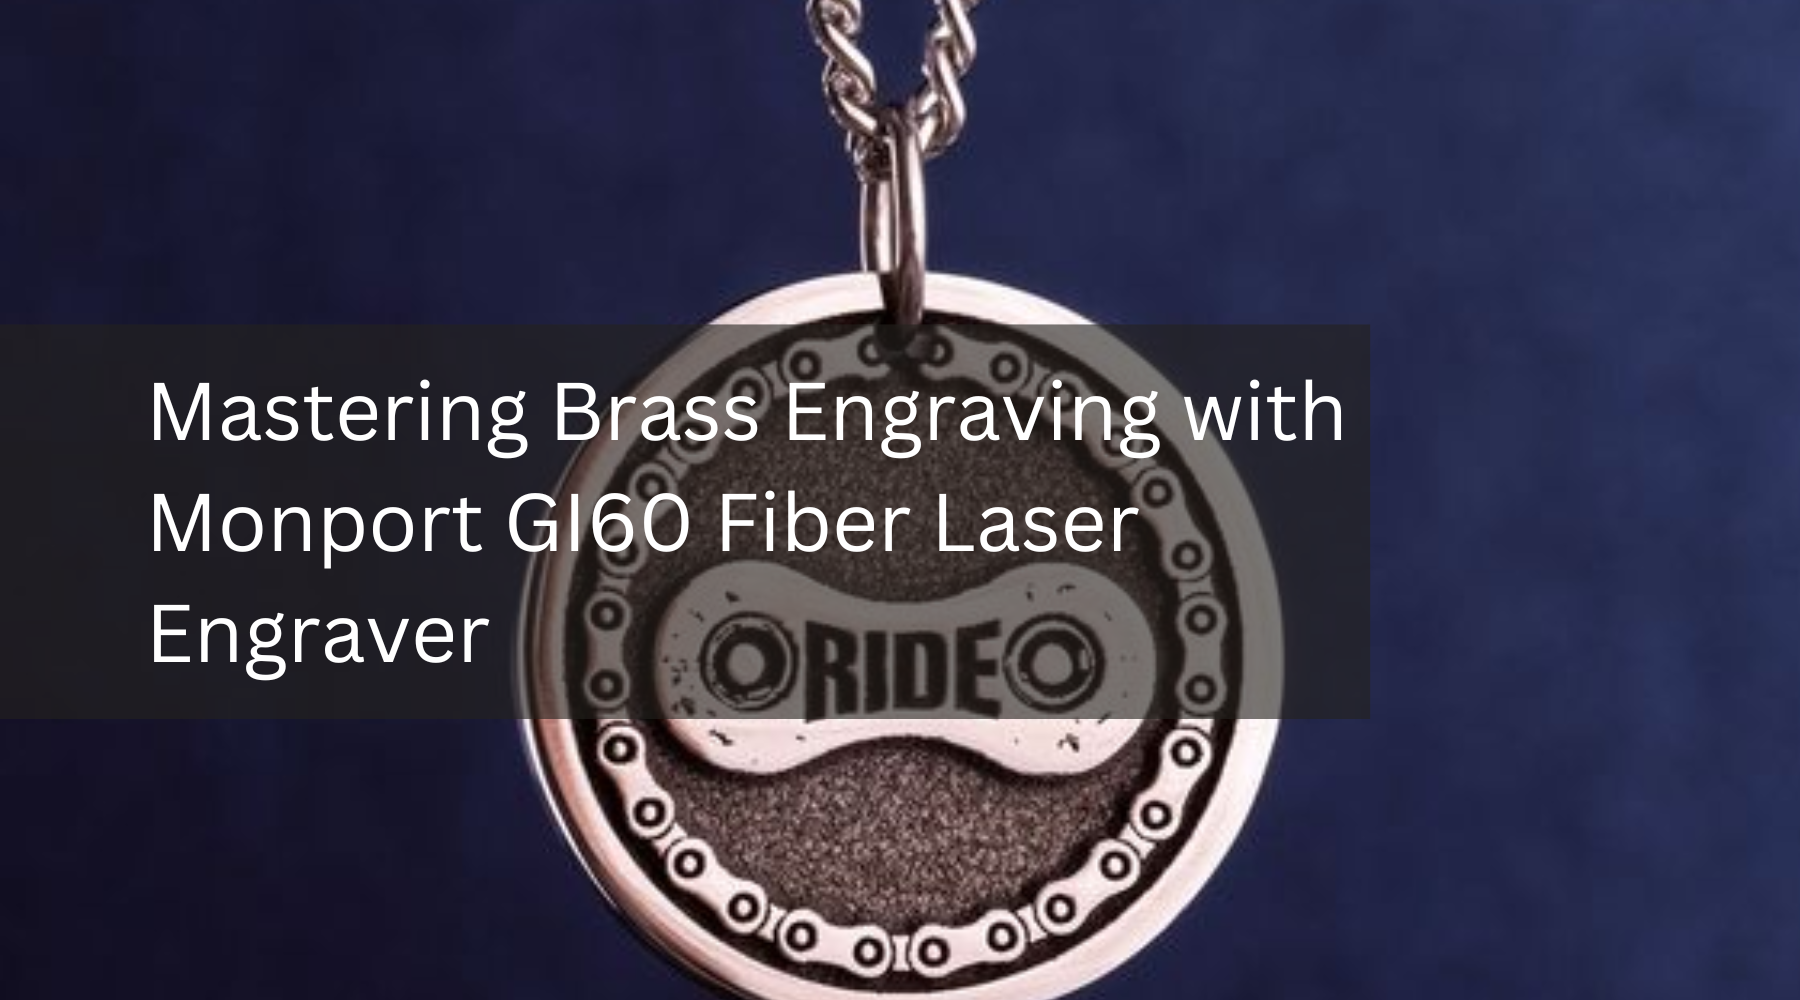 Mastering Brass Engraving with Monport GI60 Fiber Laser Engraver